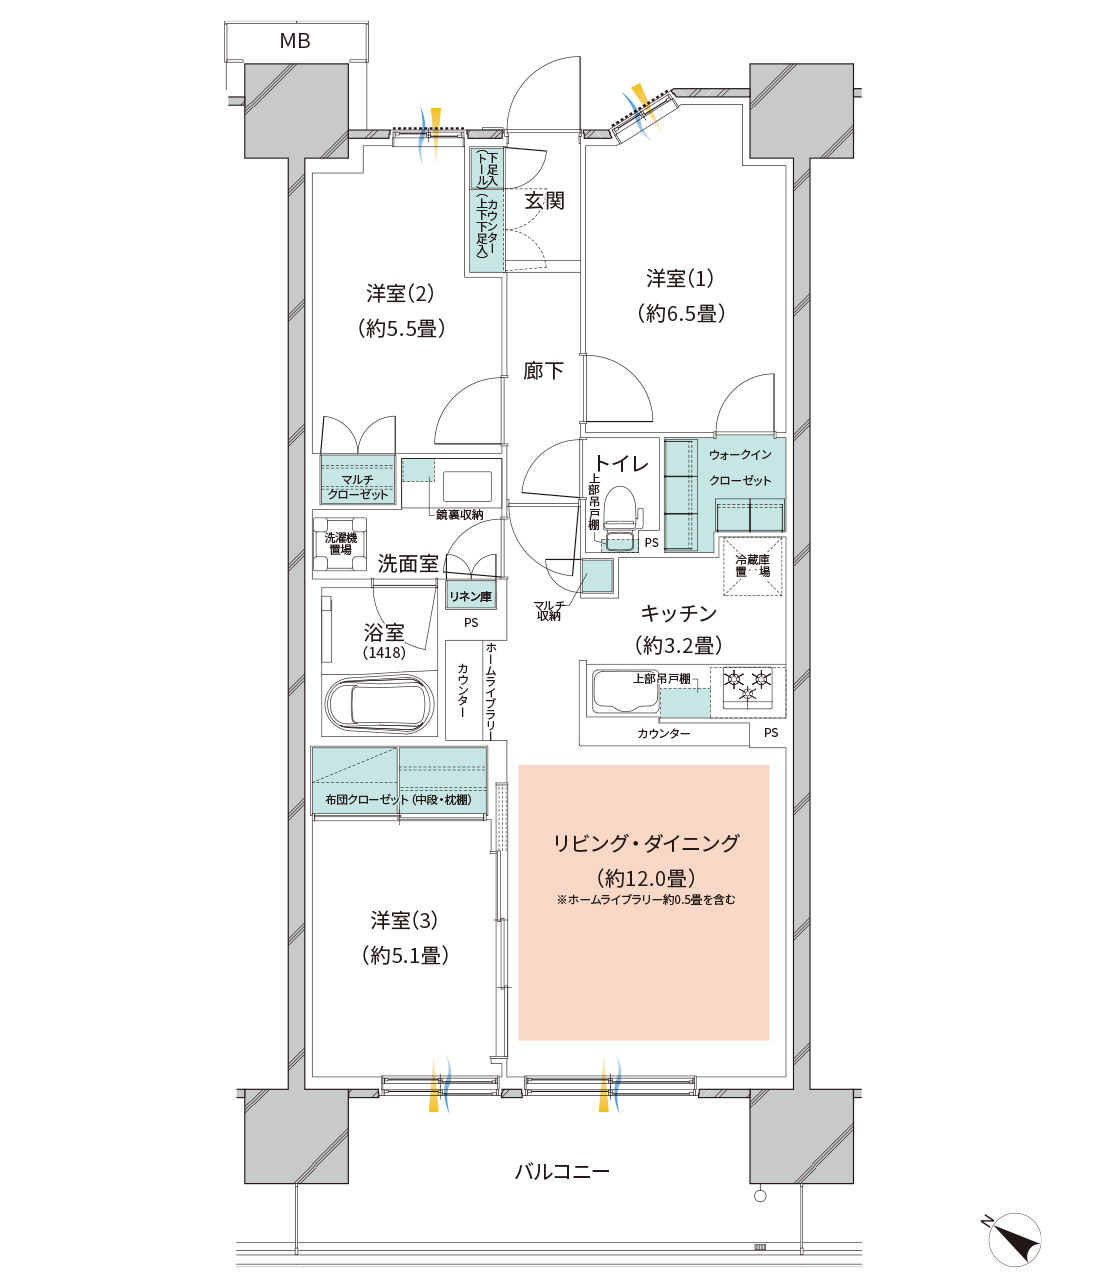 Htype オーベルグランディオ平井 東京 駅約８km圏の新築マンション